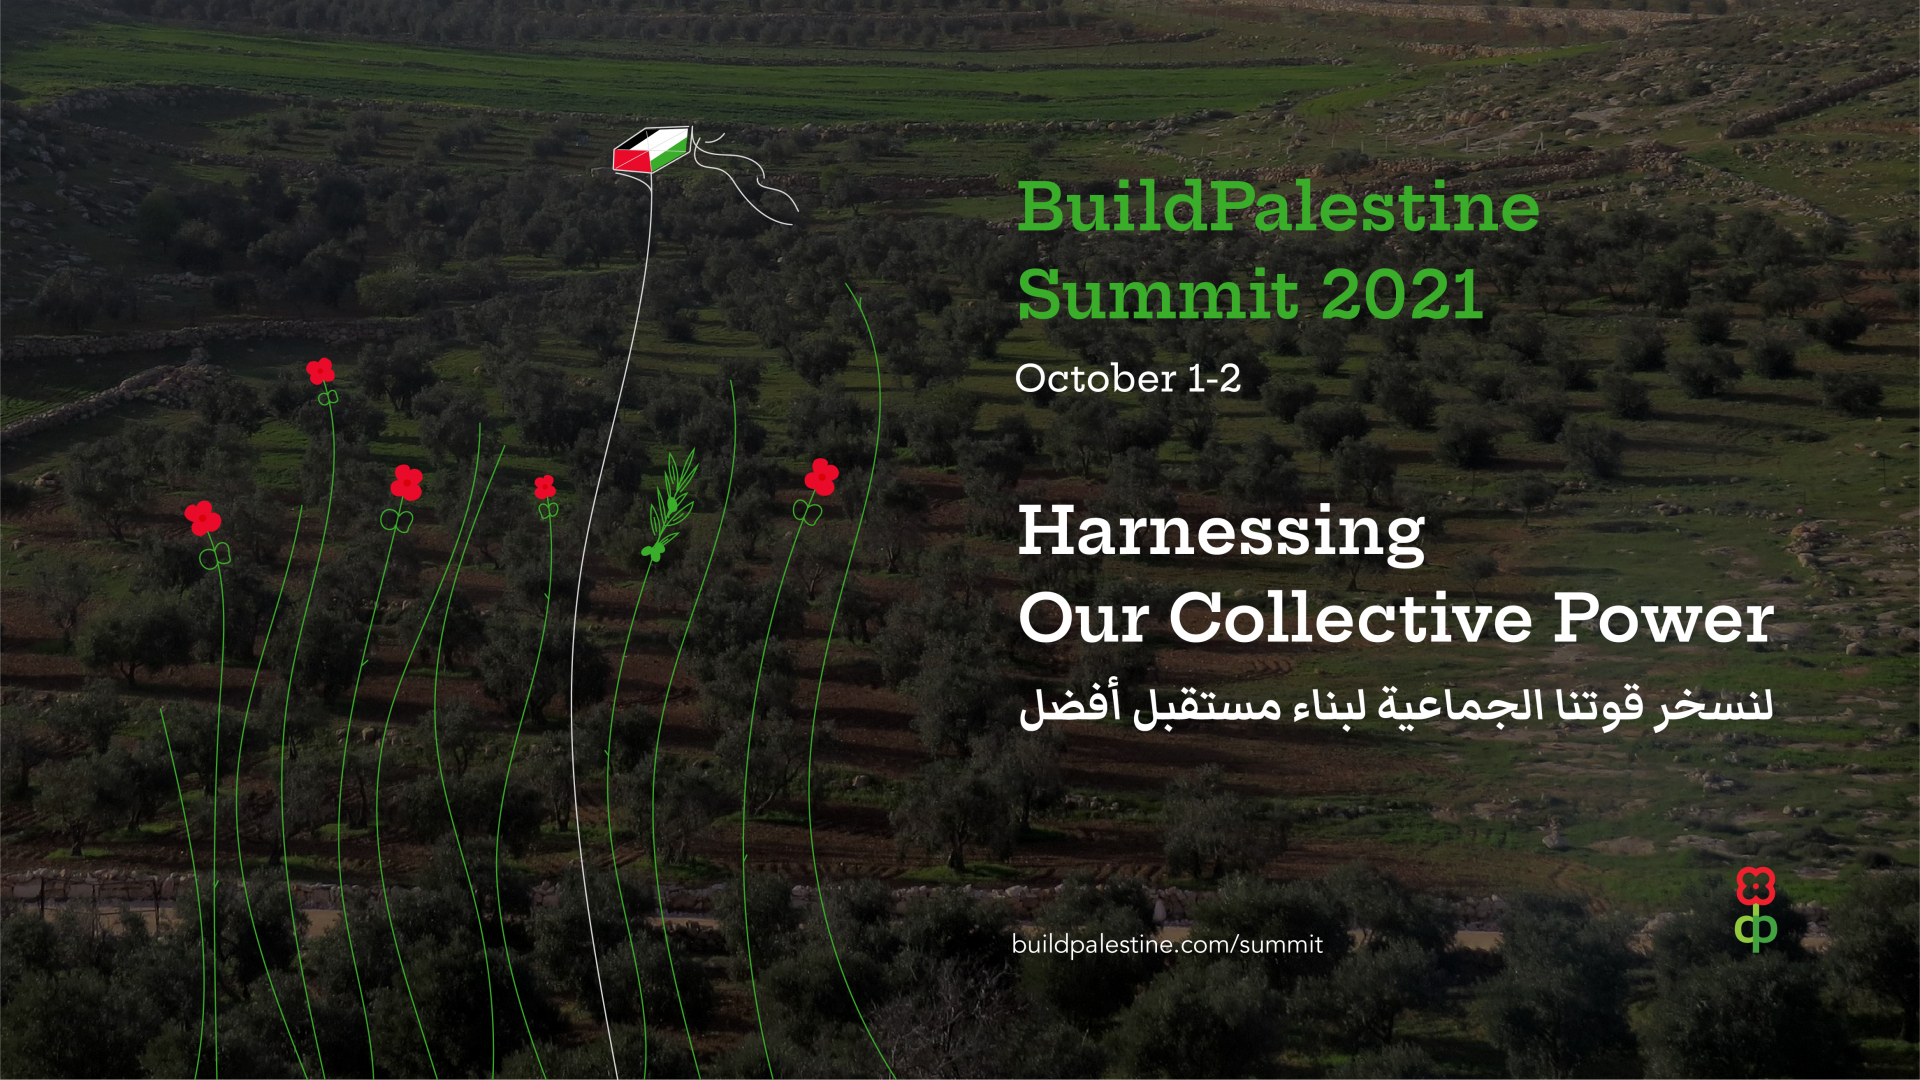 من الفلسطينيين، لفلسطين – ينطلق مؤتمر بيلدباليستاين السنوي الثاني من قواعد البيت الفلسطيني الواحد عبر فلسطين وفي الشتات.